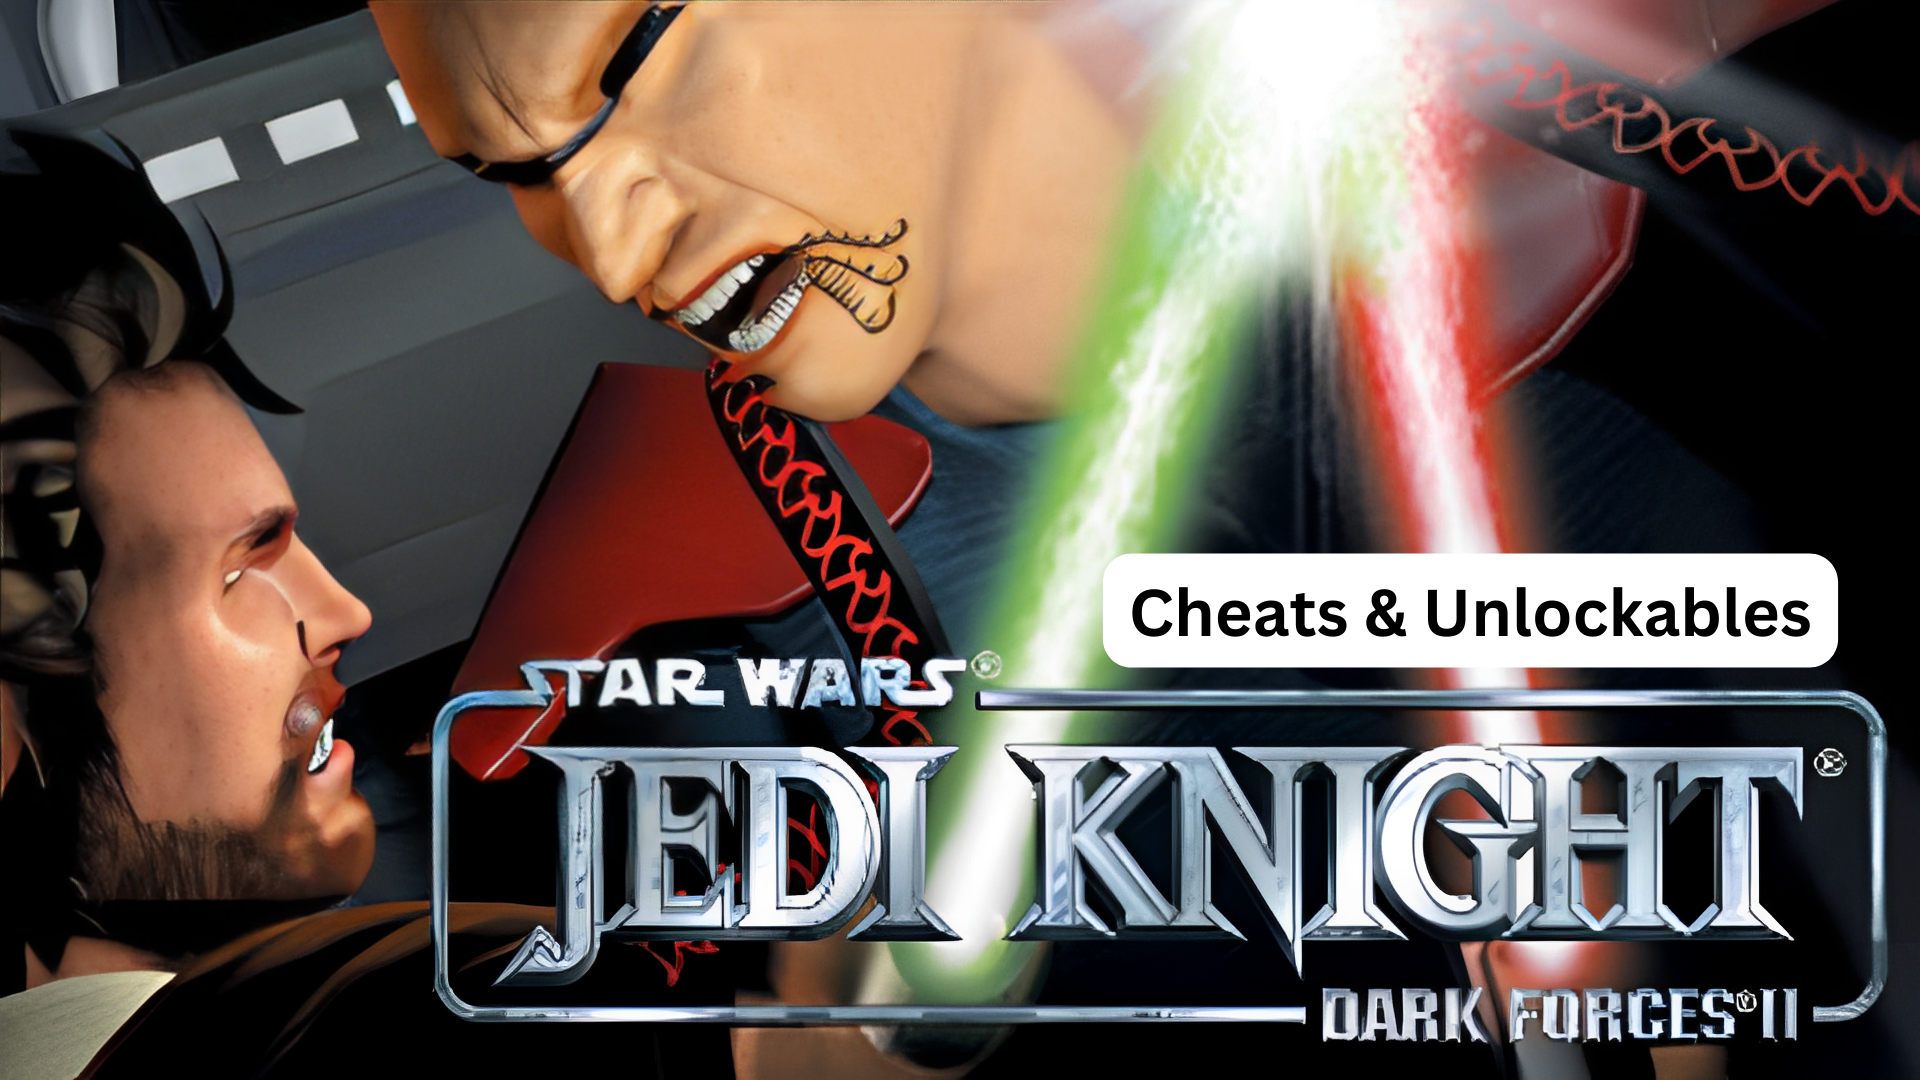 star wars: jedi knight dark forces II cheats and unlockables